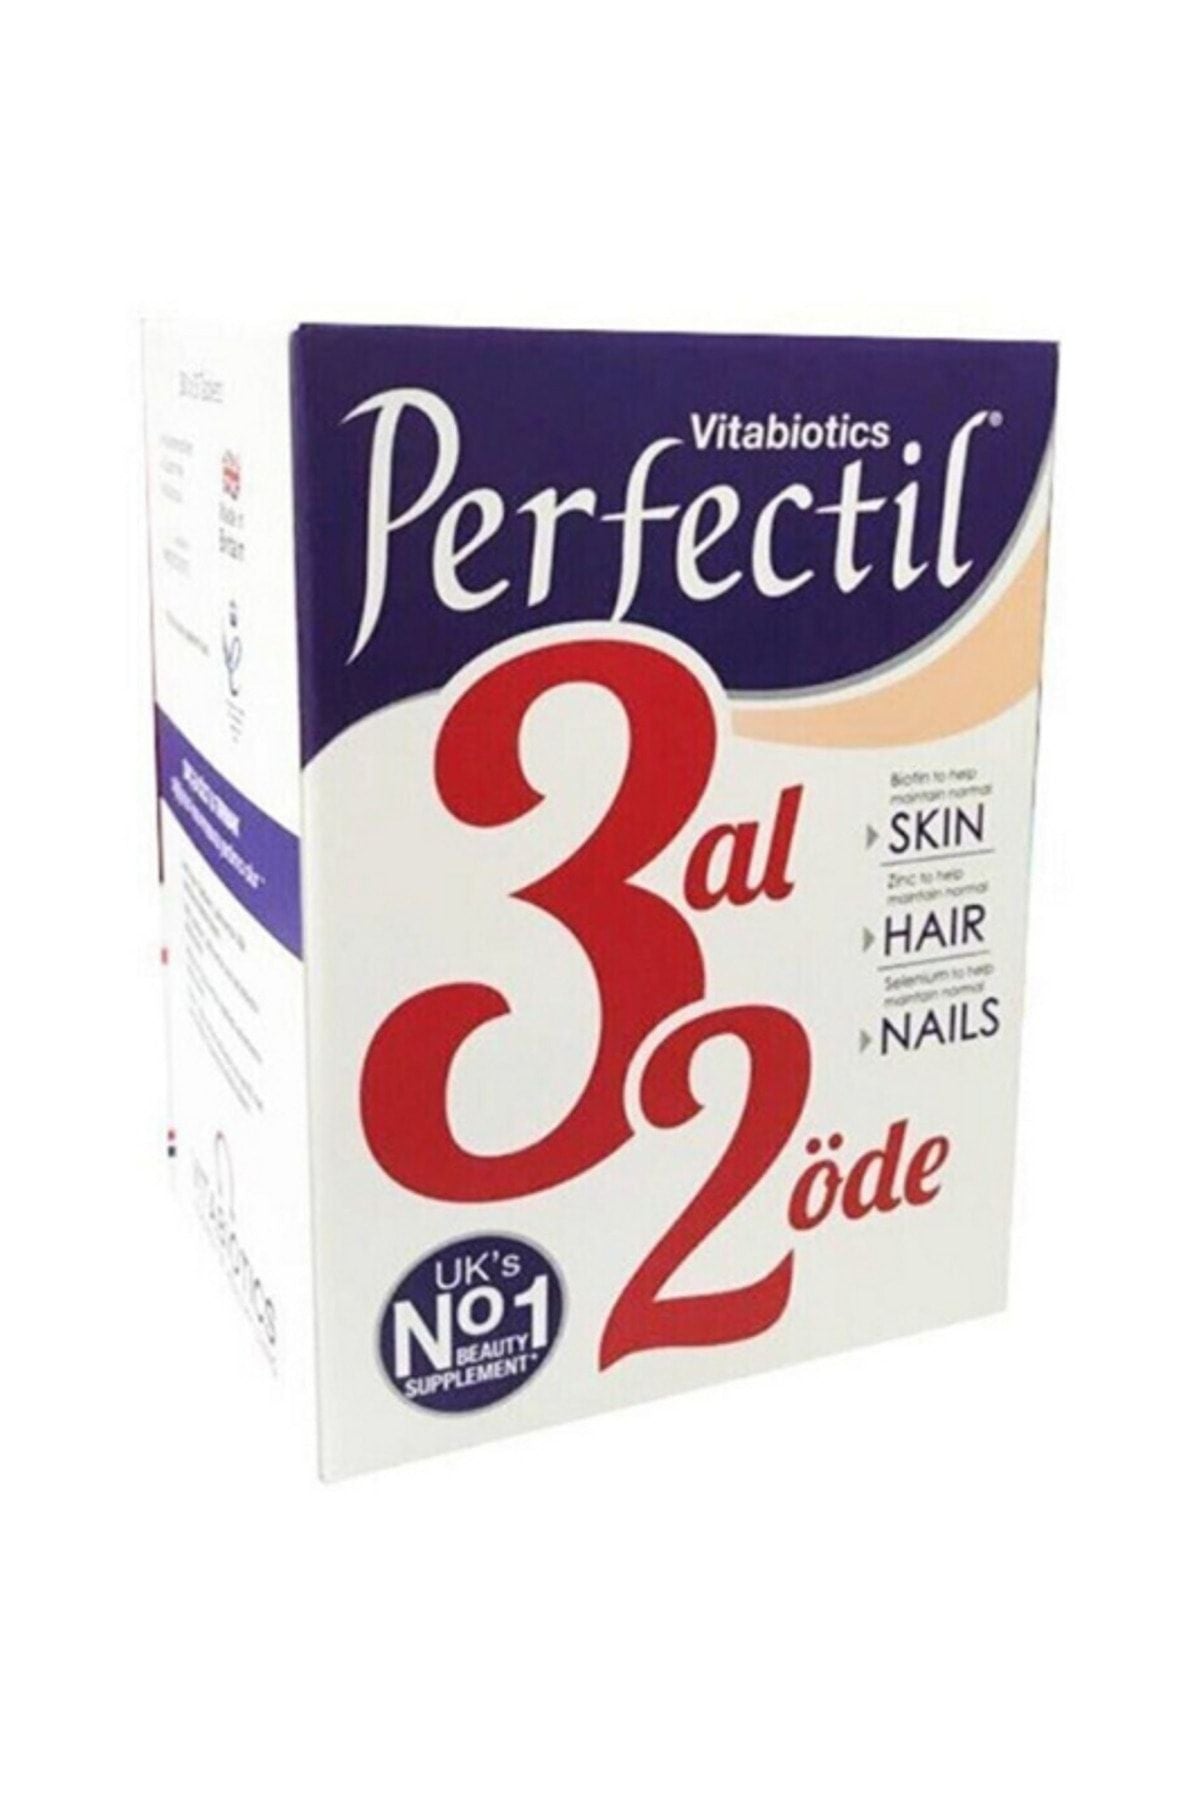 Vitabiotics Perfectil Tablet - 3 Al 2 Öde